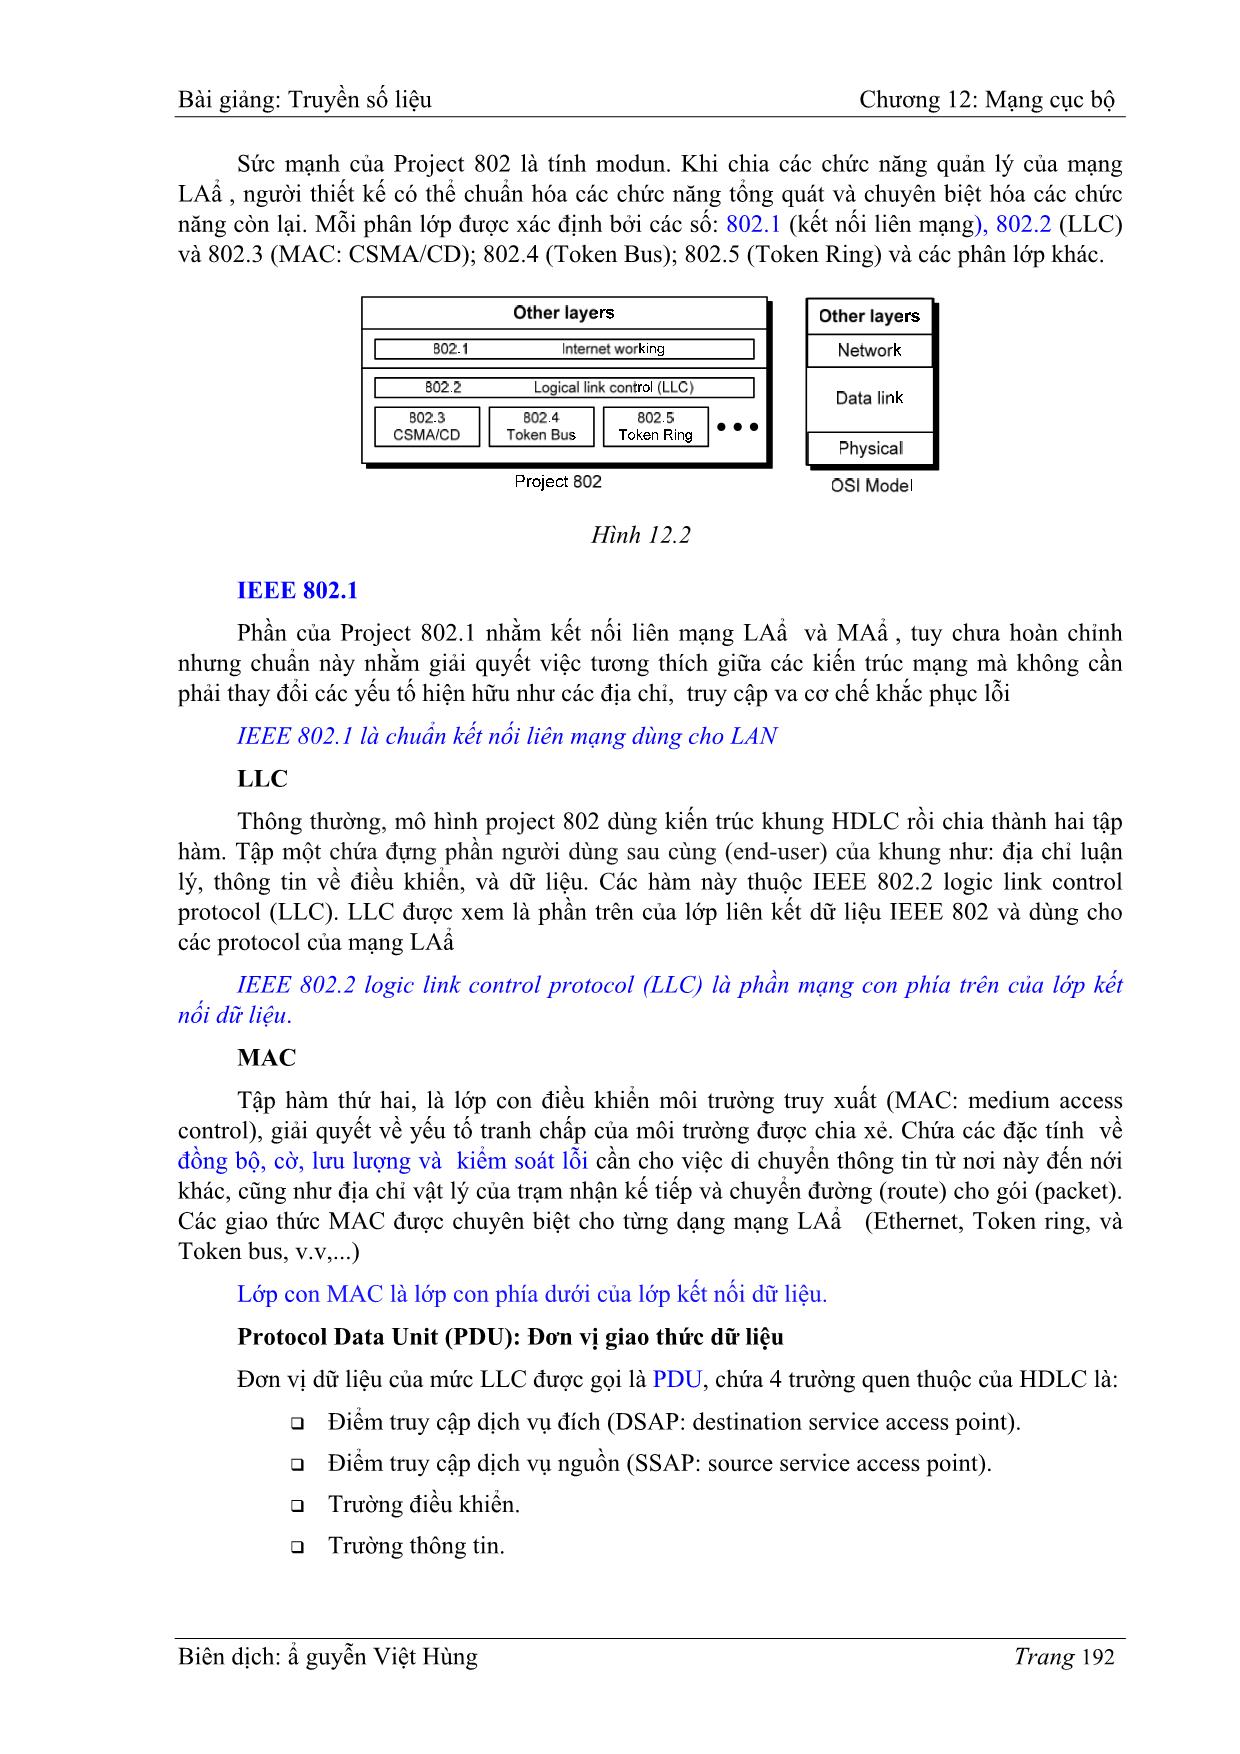 Bài giảng Truyền số liệu - Chương 12: Mạng cục bộ (LAN: Local area networks) - Nguyễn Việt Hùng trang 2